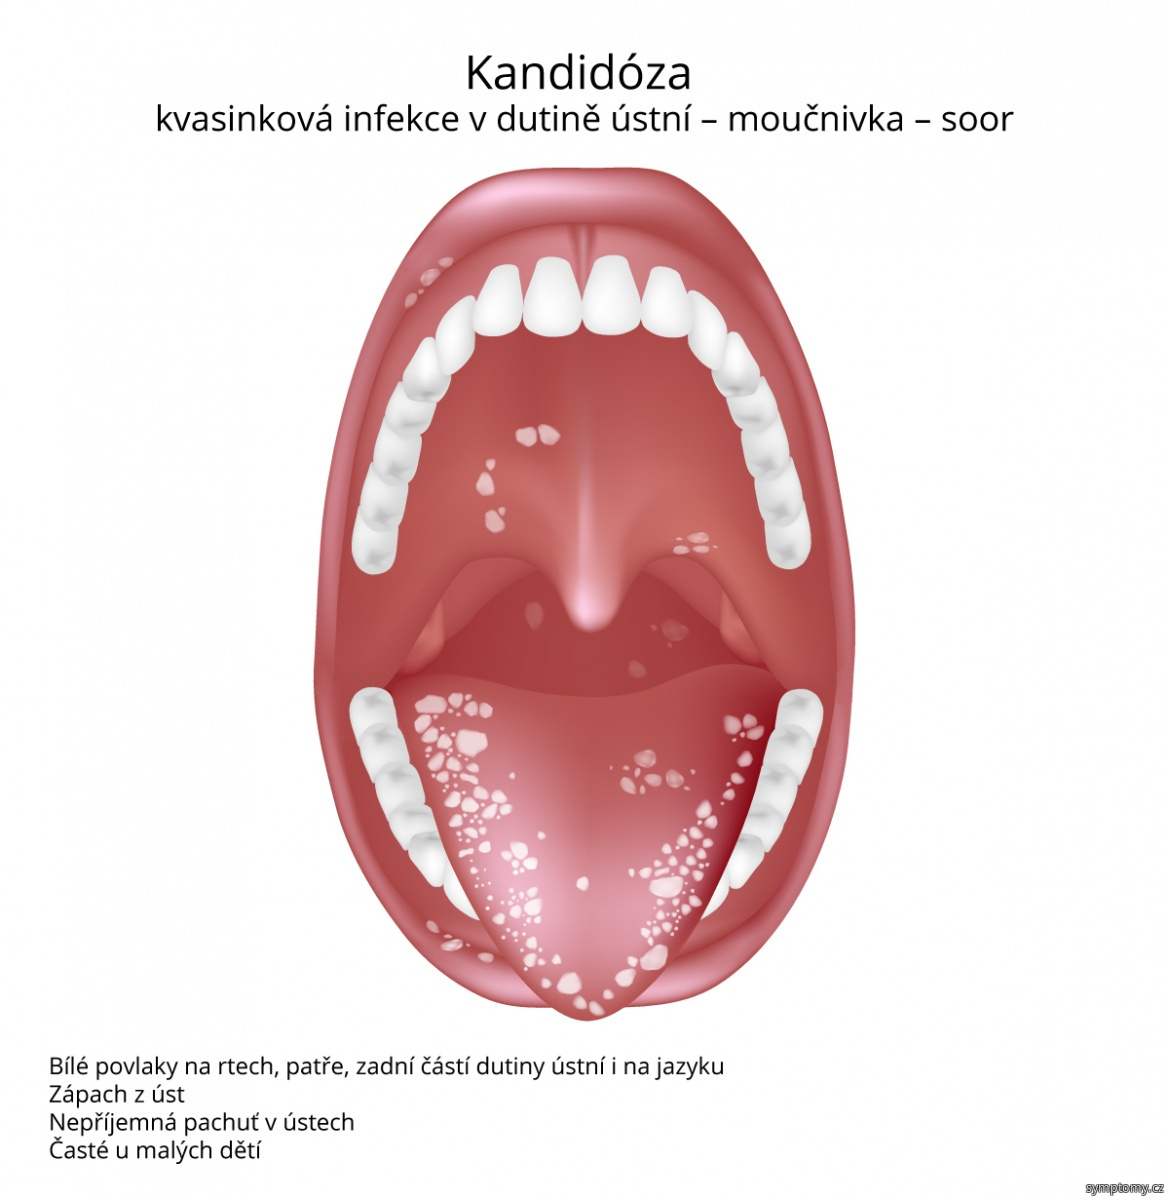 Kandidóza (kvasinková infekce v dutině ústní)